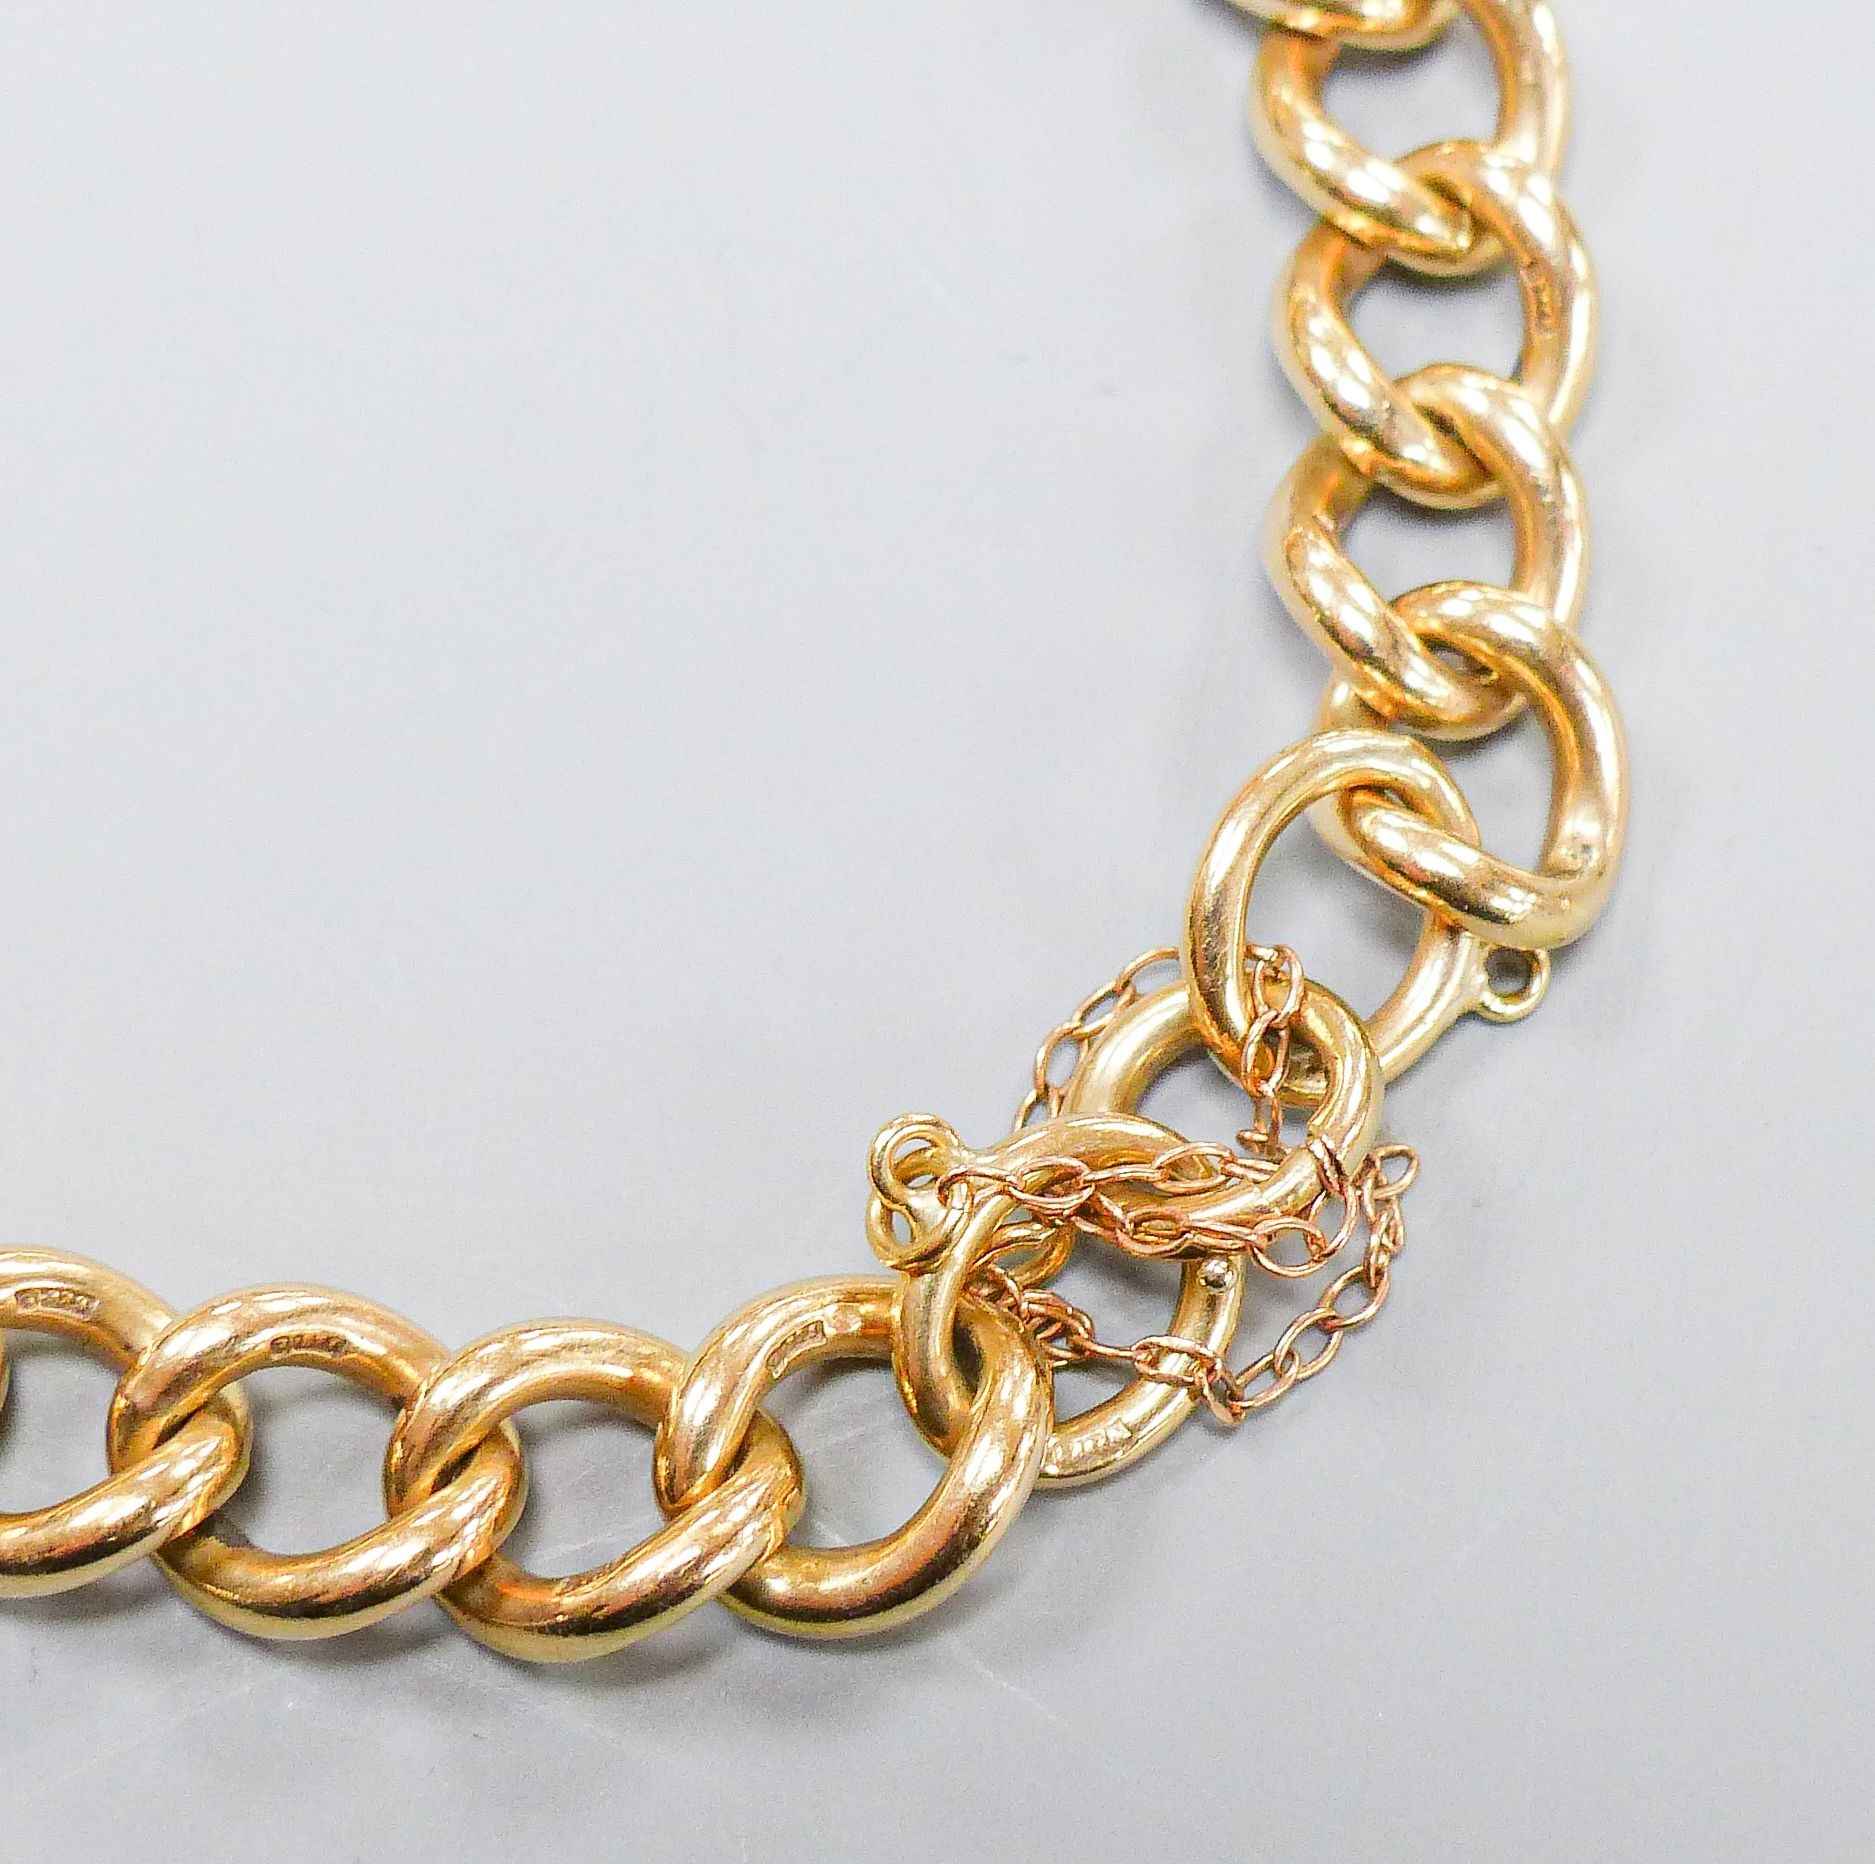 A 9ct gold curb-link bracelet, 20cm, 30.6 grams.